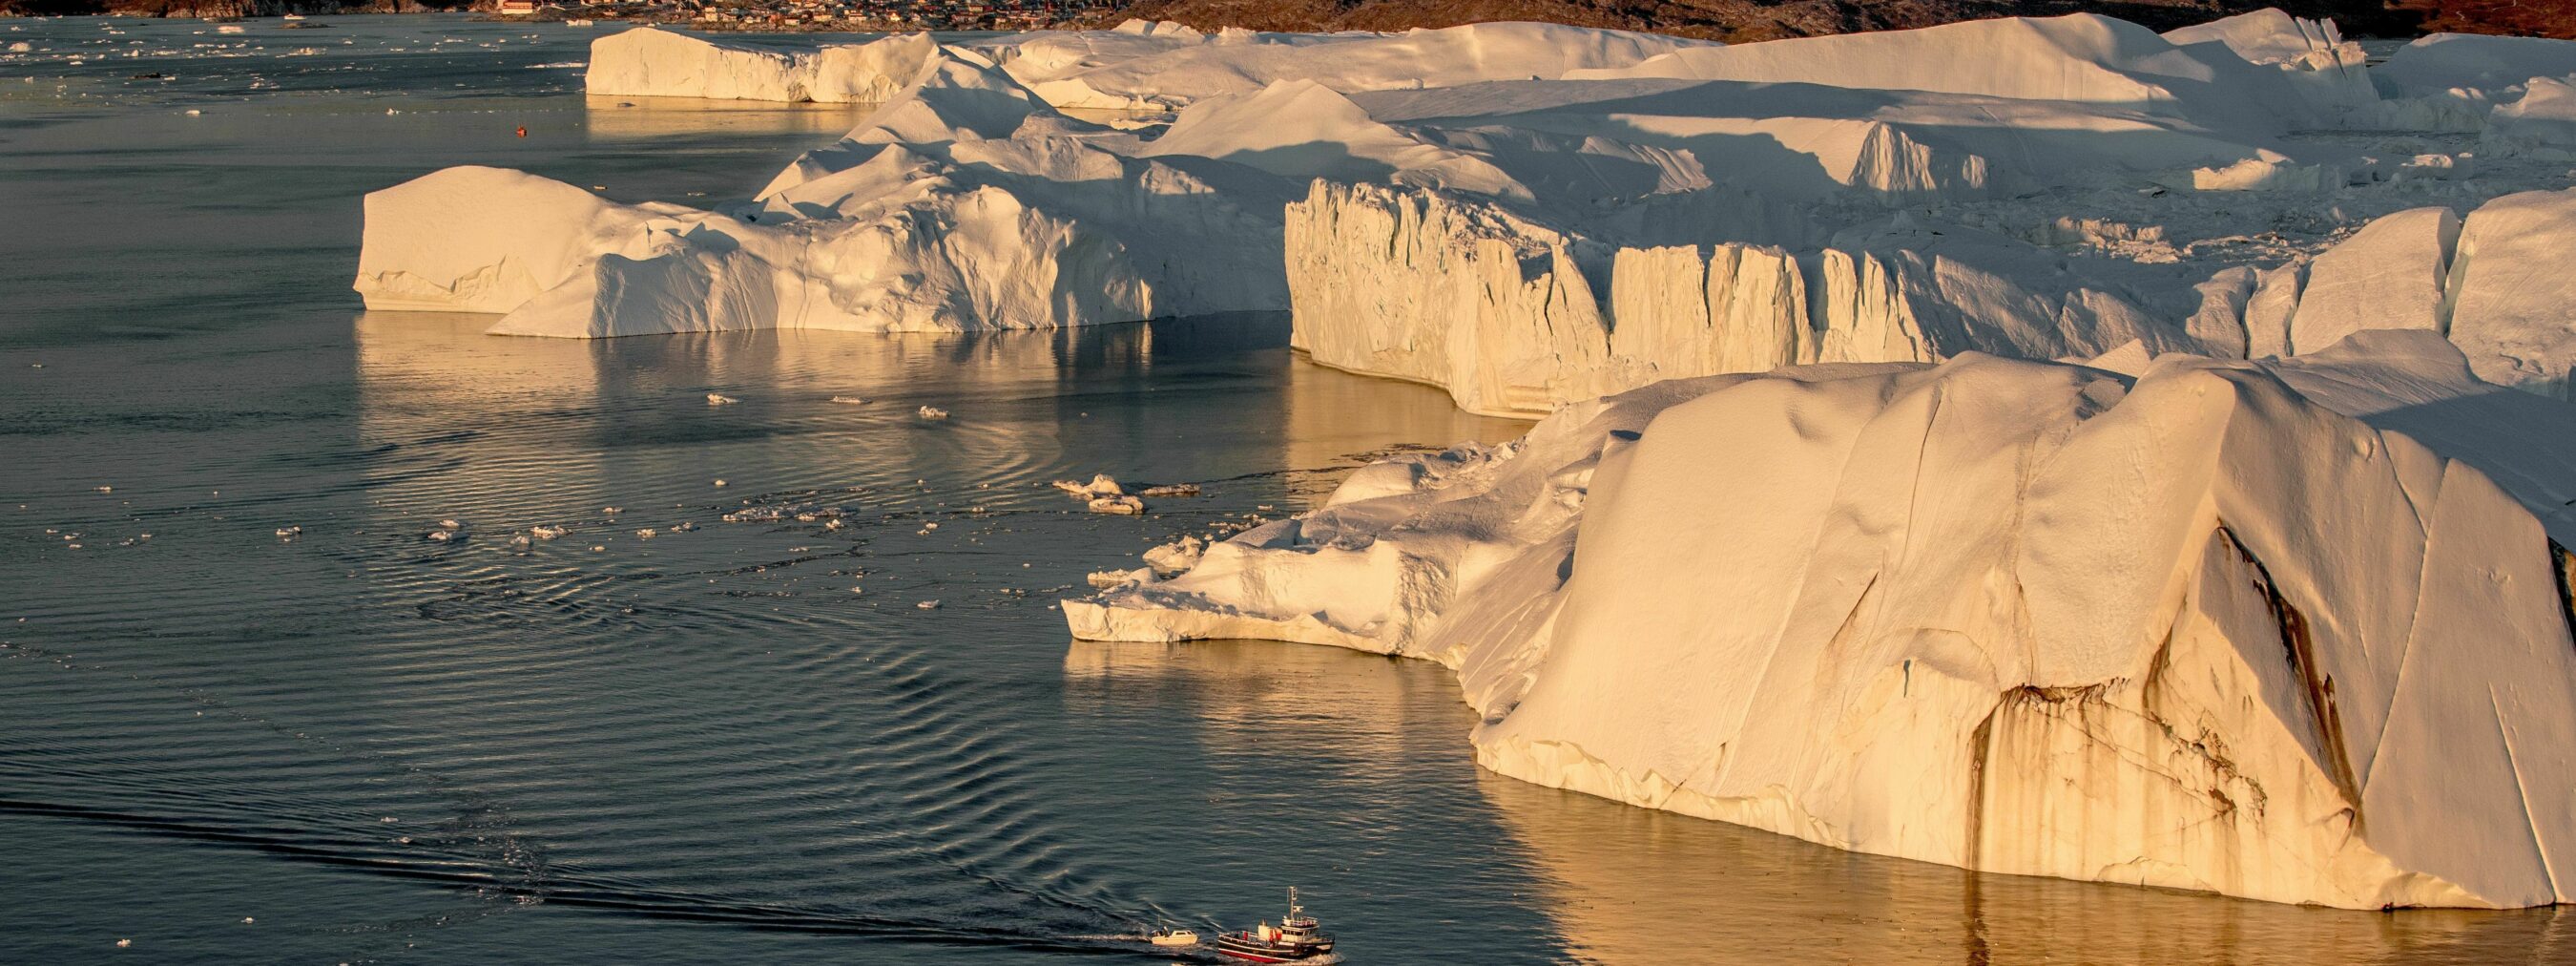 Nordgrönland: Ilulissat
Fischerboot fährt zwischen Eisblöcken hindurch